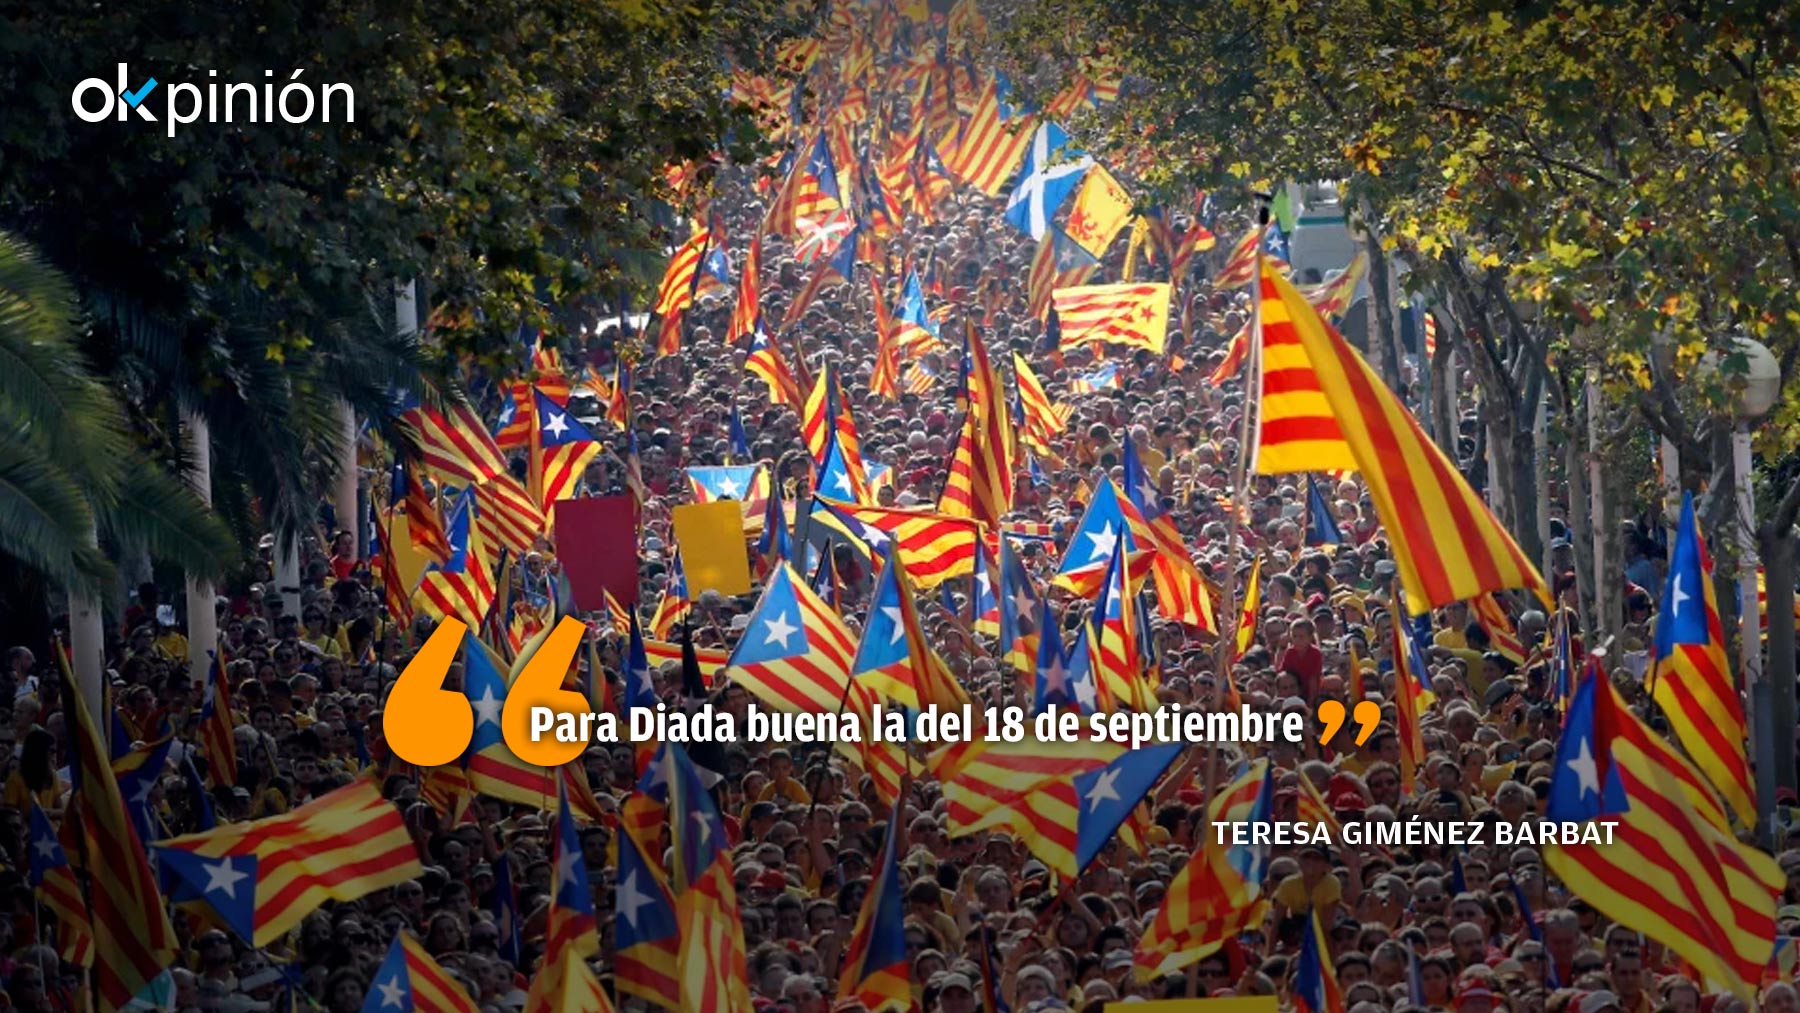 La Diada siempre ha sido un aplec de ellos. Al principio podía pasar como “catalanista”, y hasta te podías apuntar.